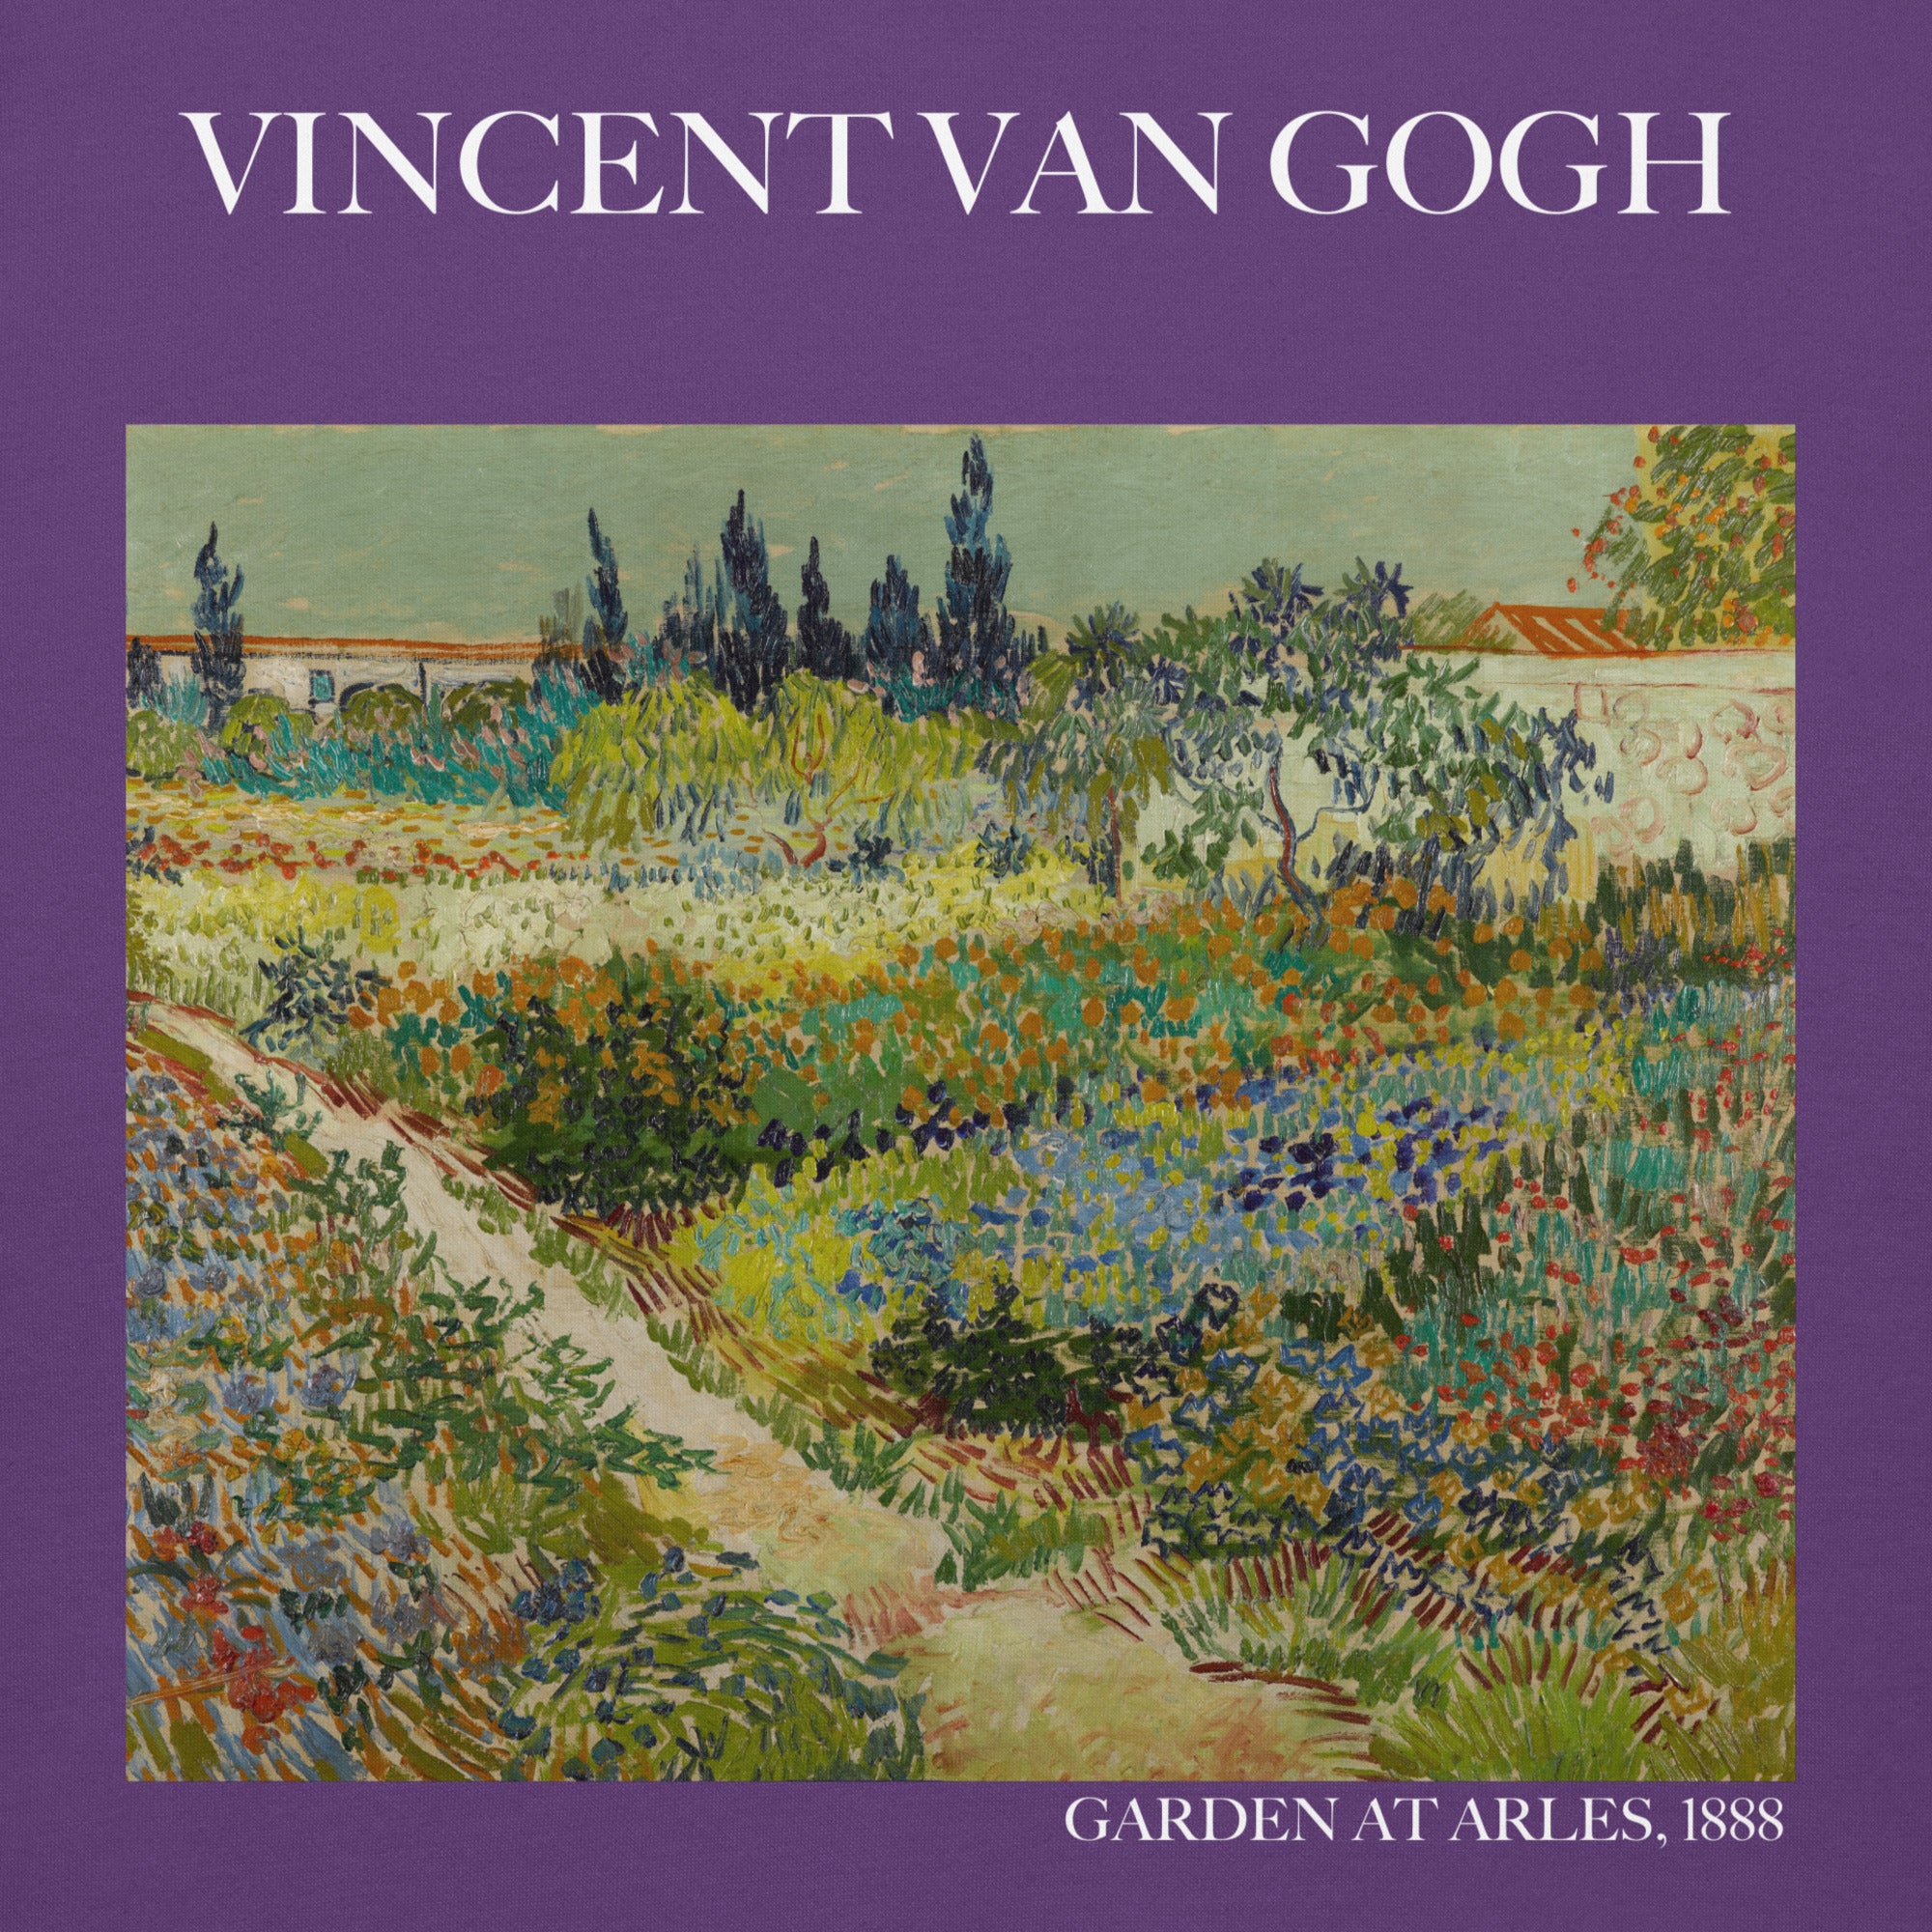 Kapuzenpullover mit berühmtem Gemälde „Garten in Arles“ von Vincent van Gogh | Unisex-Kapuzenpullover mit Premium-Kunstmotiv